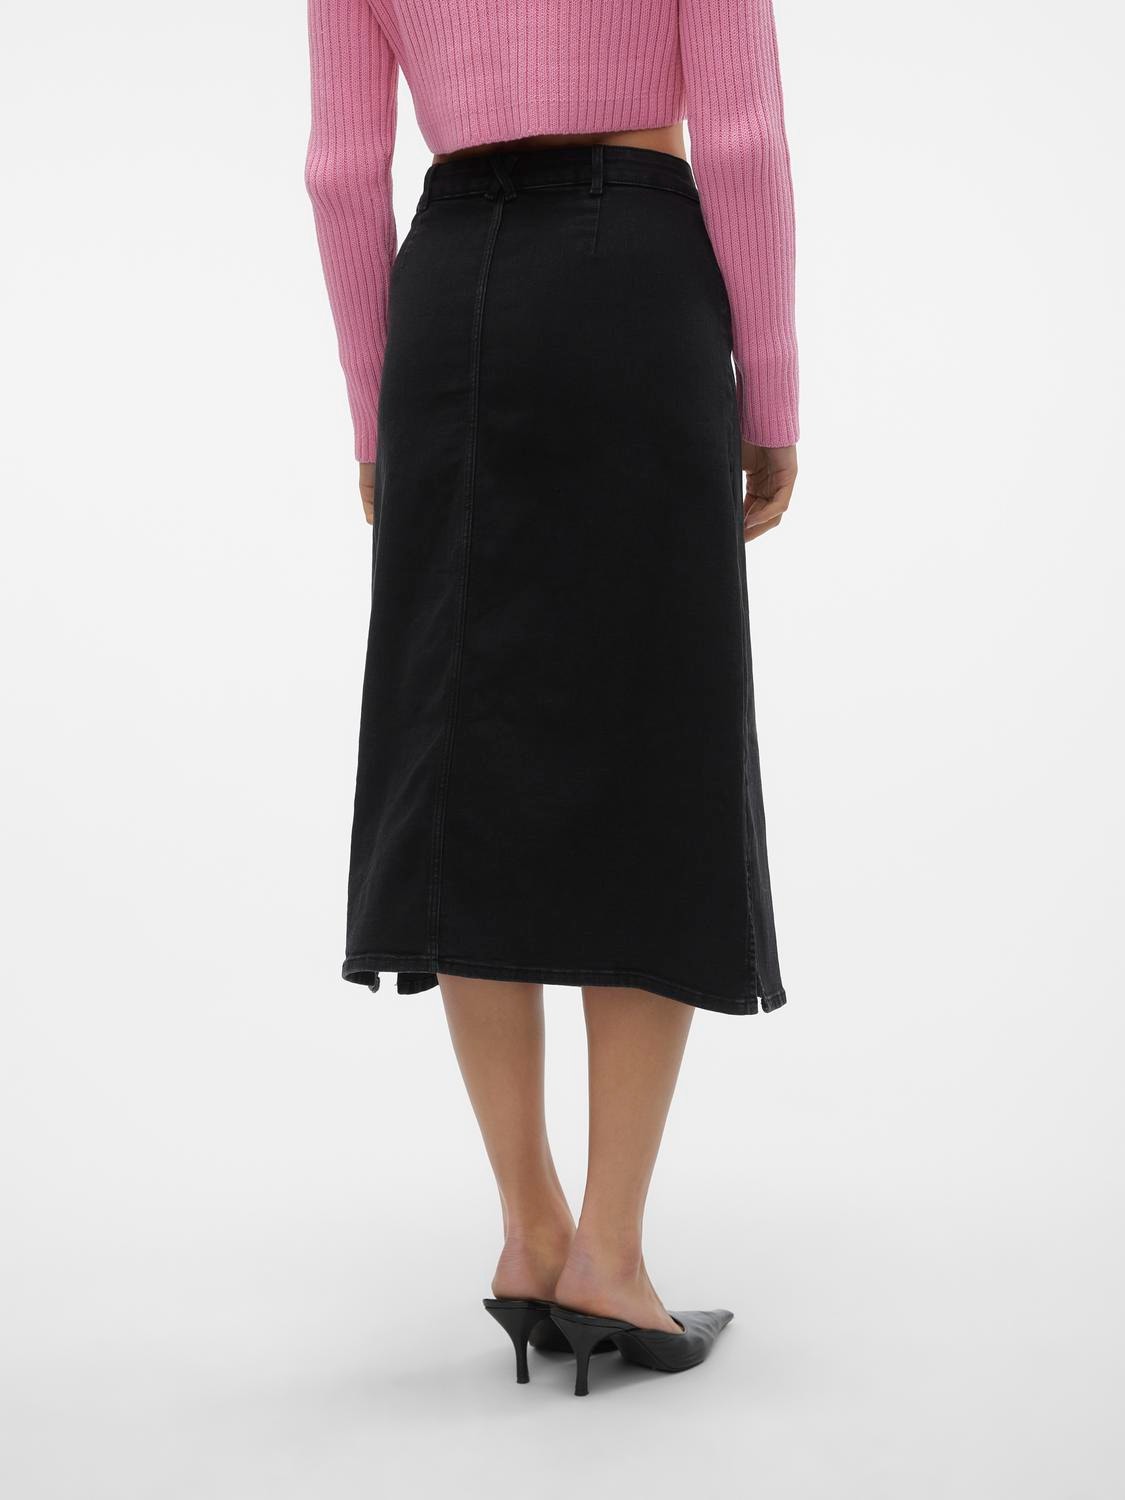 Vero Moda VMNELLY High waist Long Skirt -Black Denim - 10310664